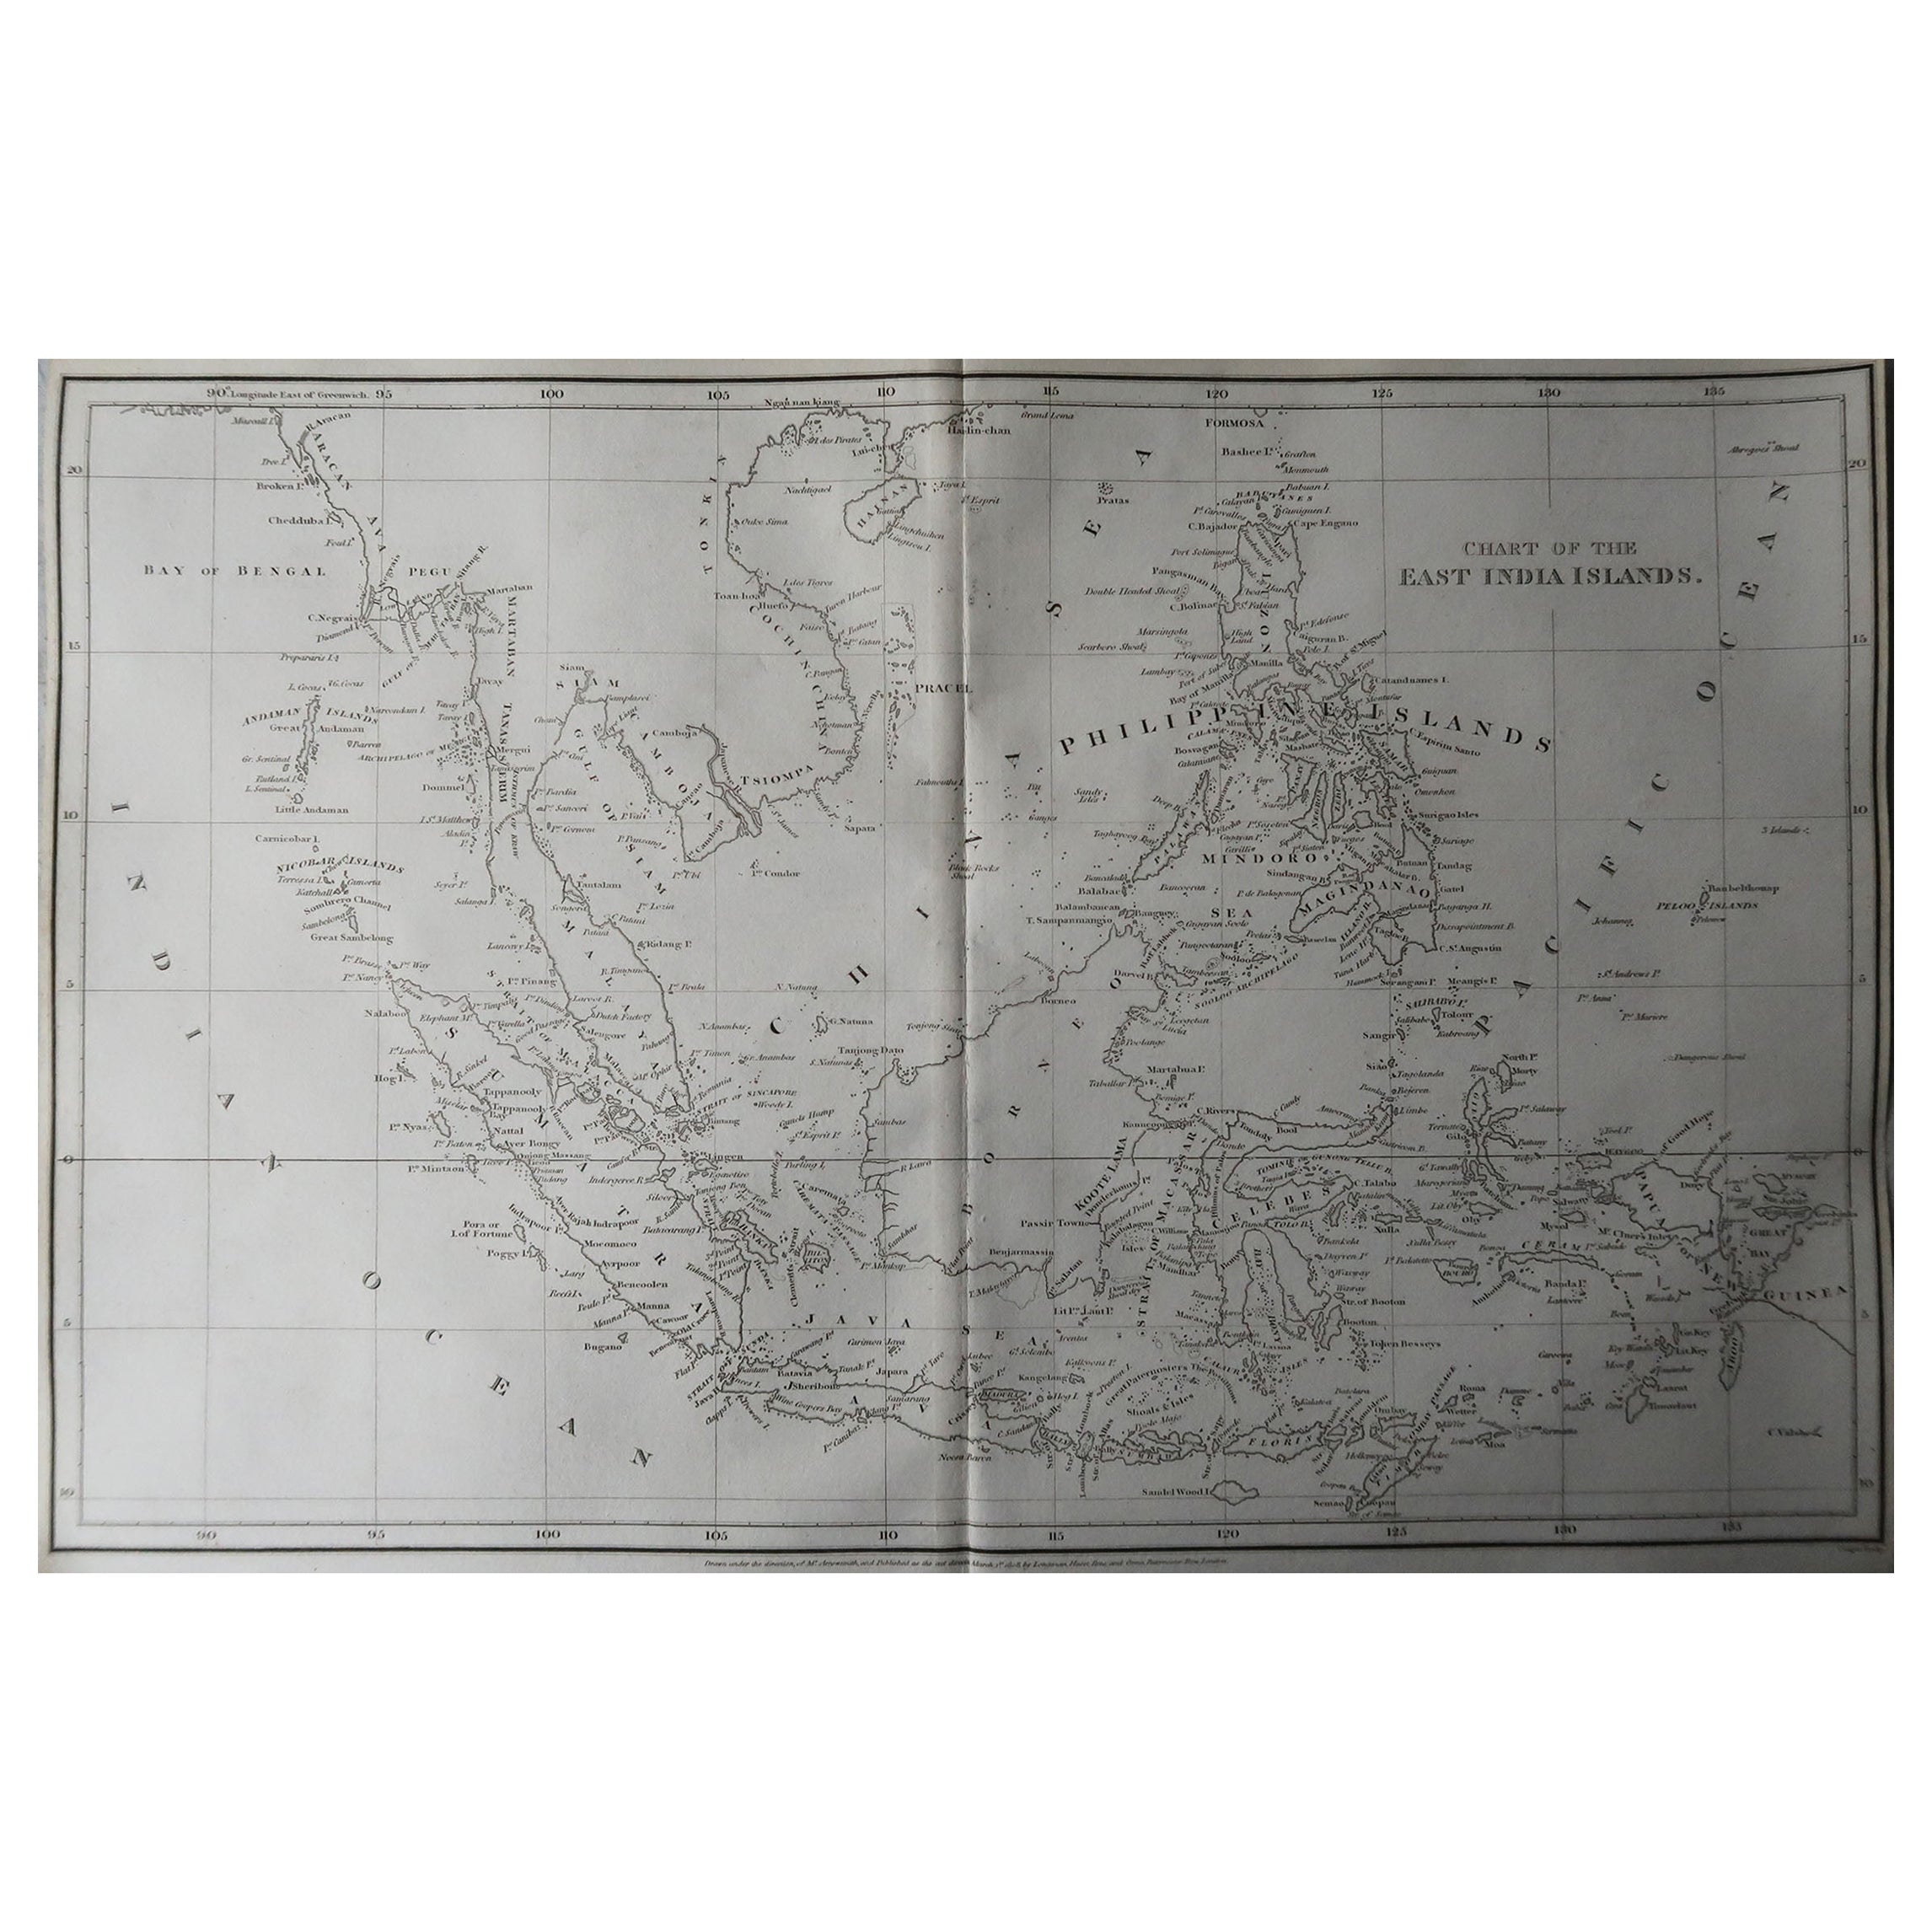 Großartige Karte von Südostasien

Gezeichnet unter der Leitung von Arrowsmith

Kupferstich

Veröffentlicht von Longman, Hurst, Rees, Orme und Brown, 1820

Ungerahmt.